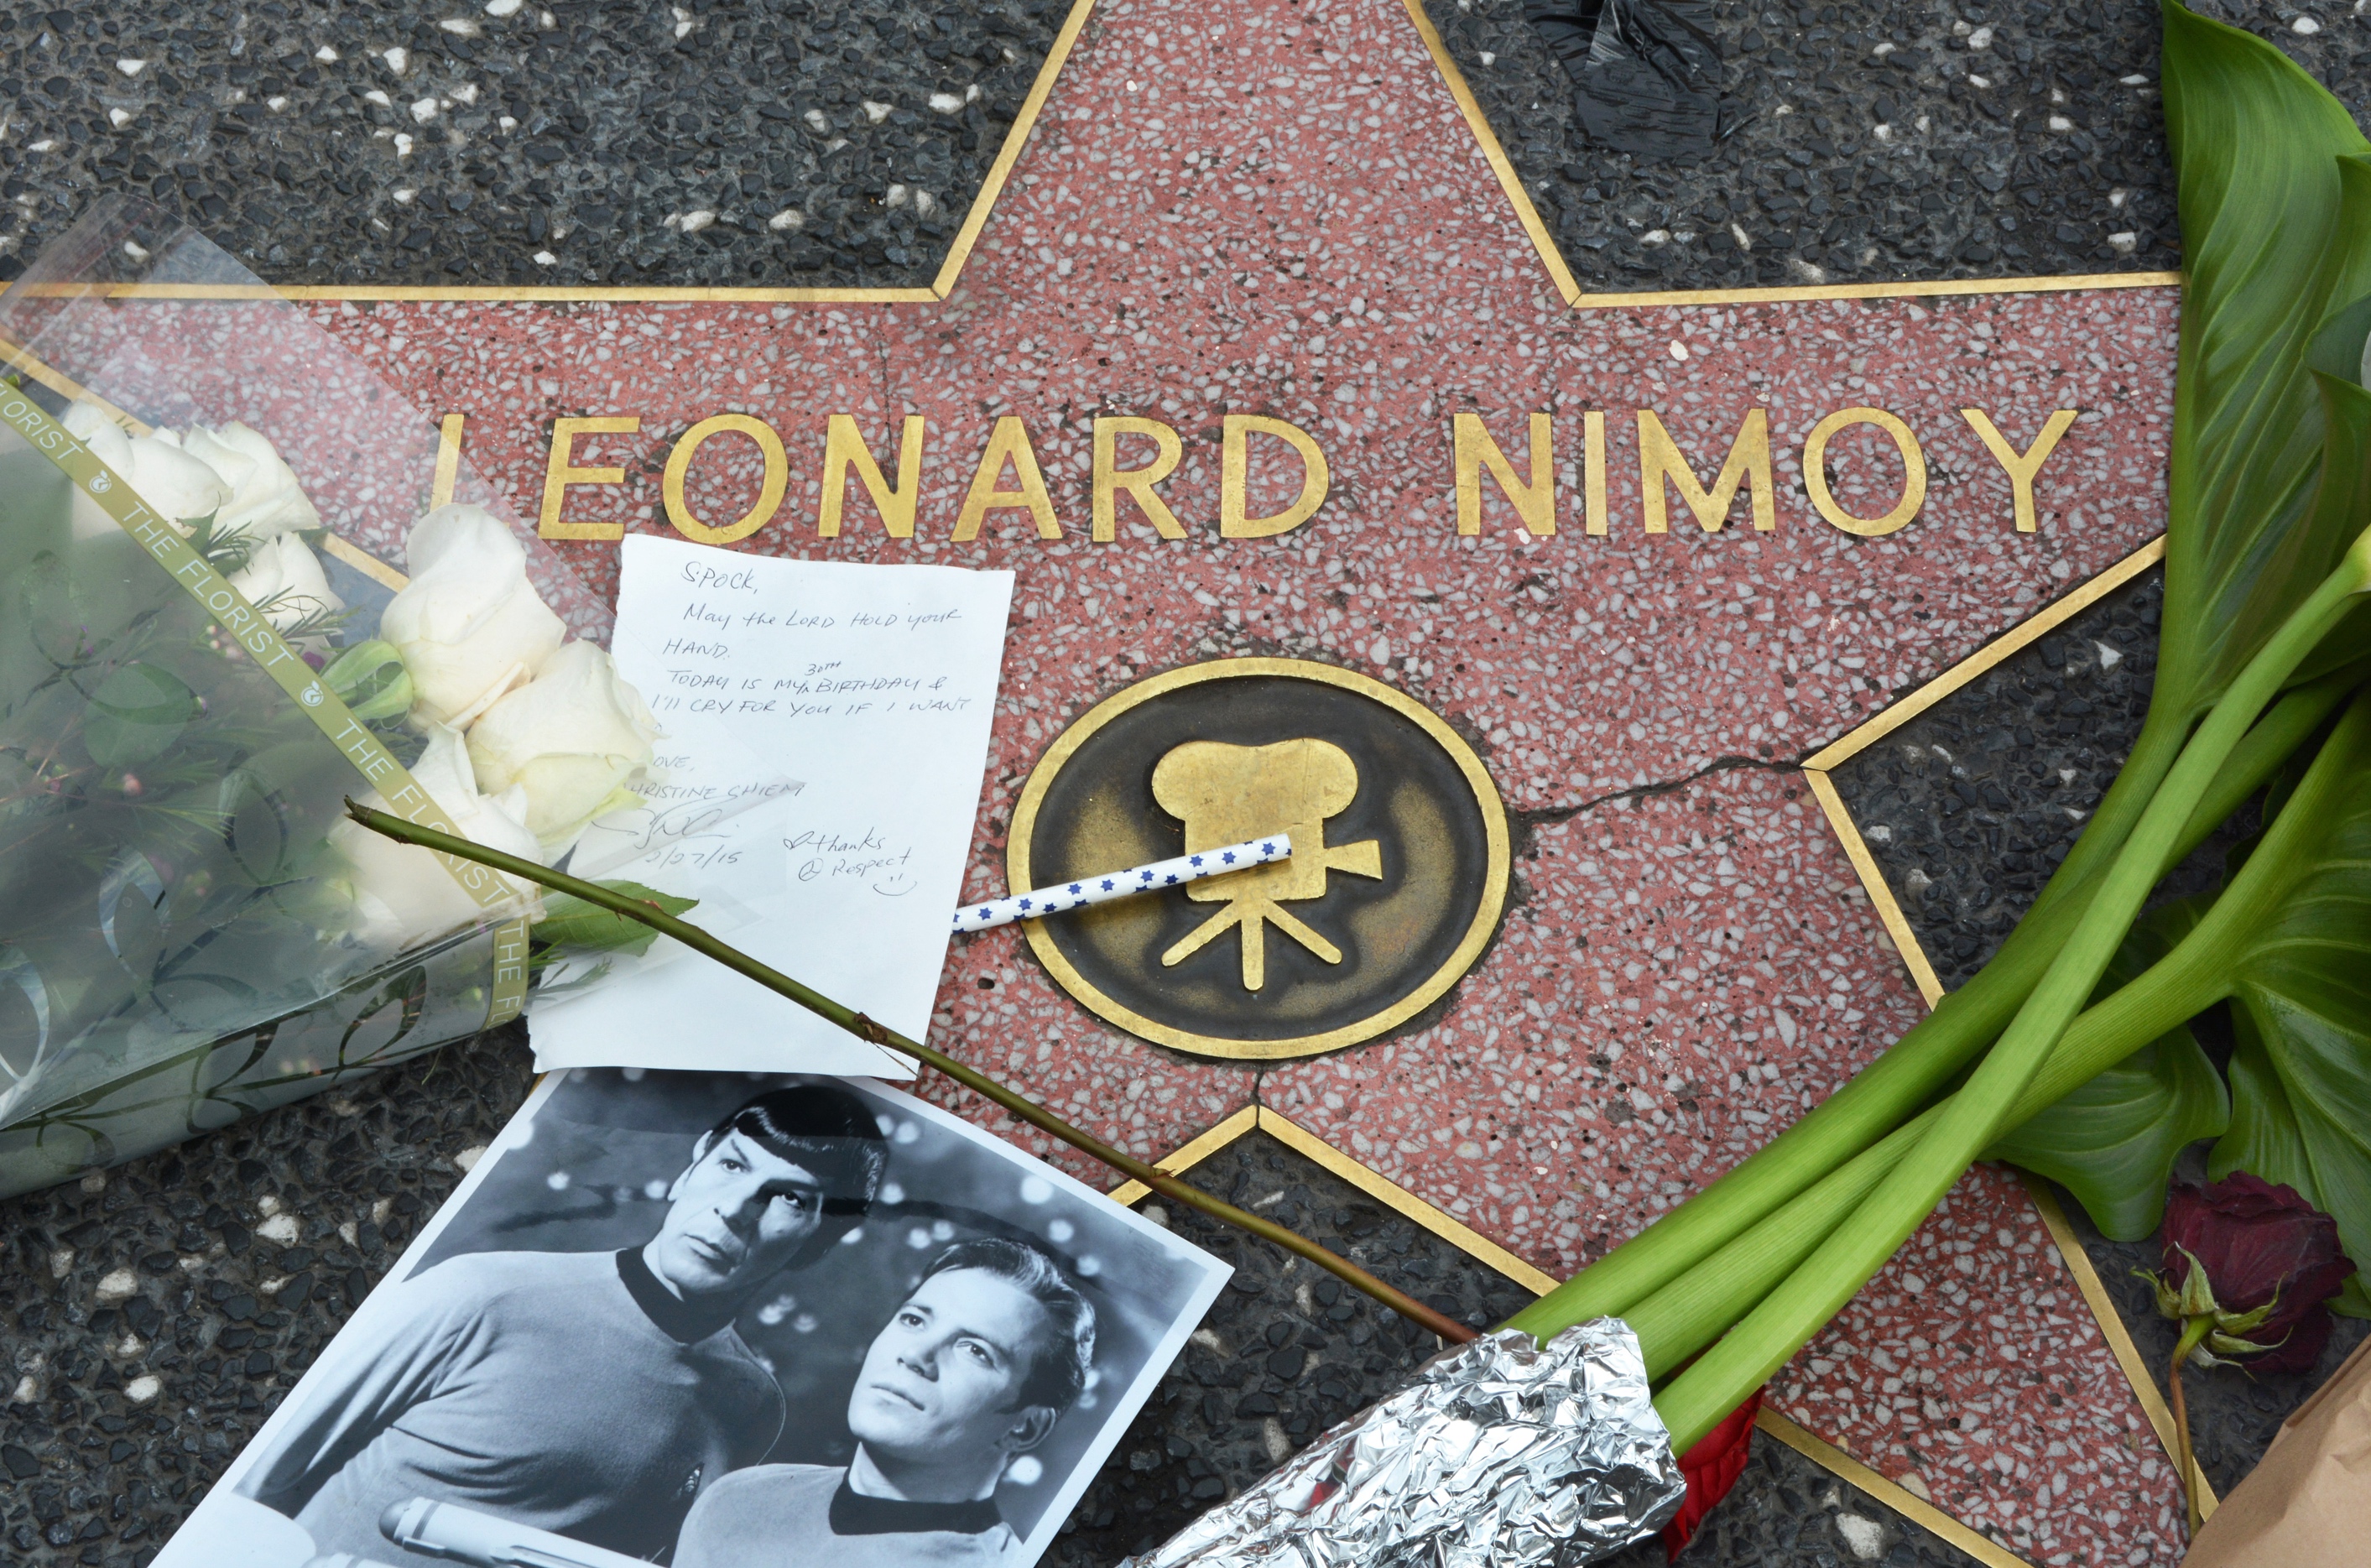 Calçada da fama - Leonard Nimoy